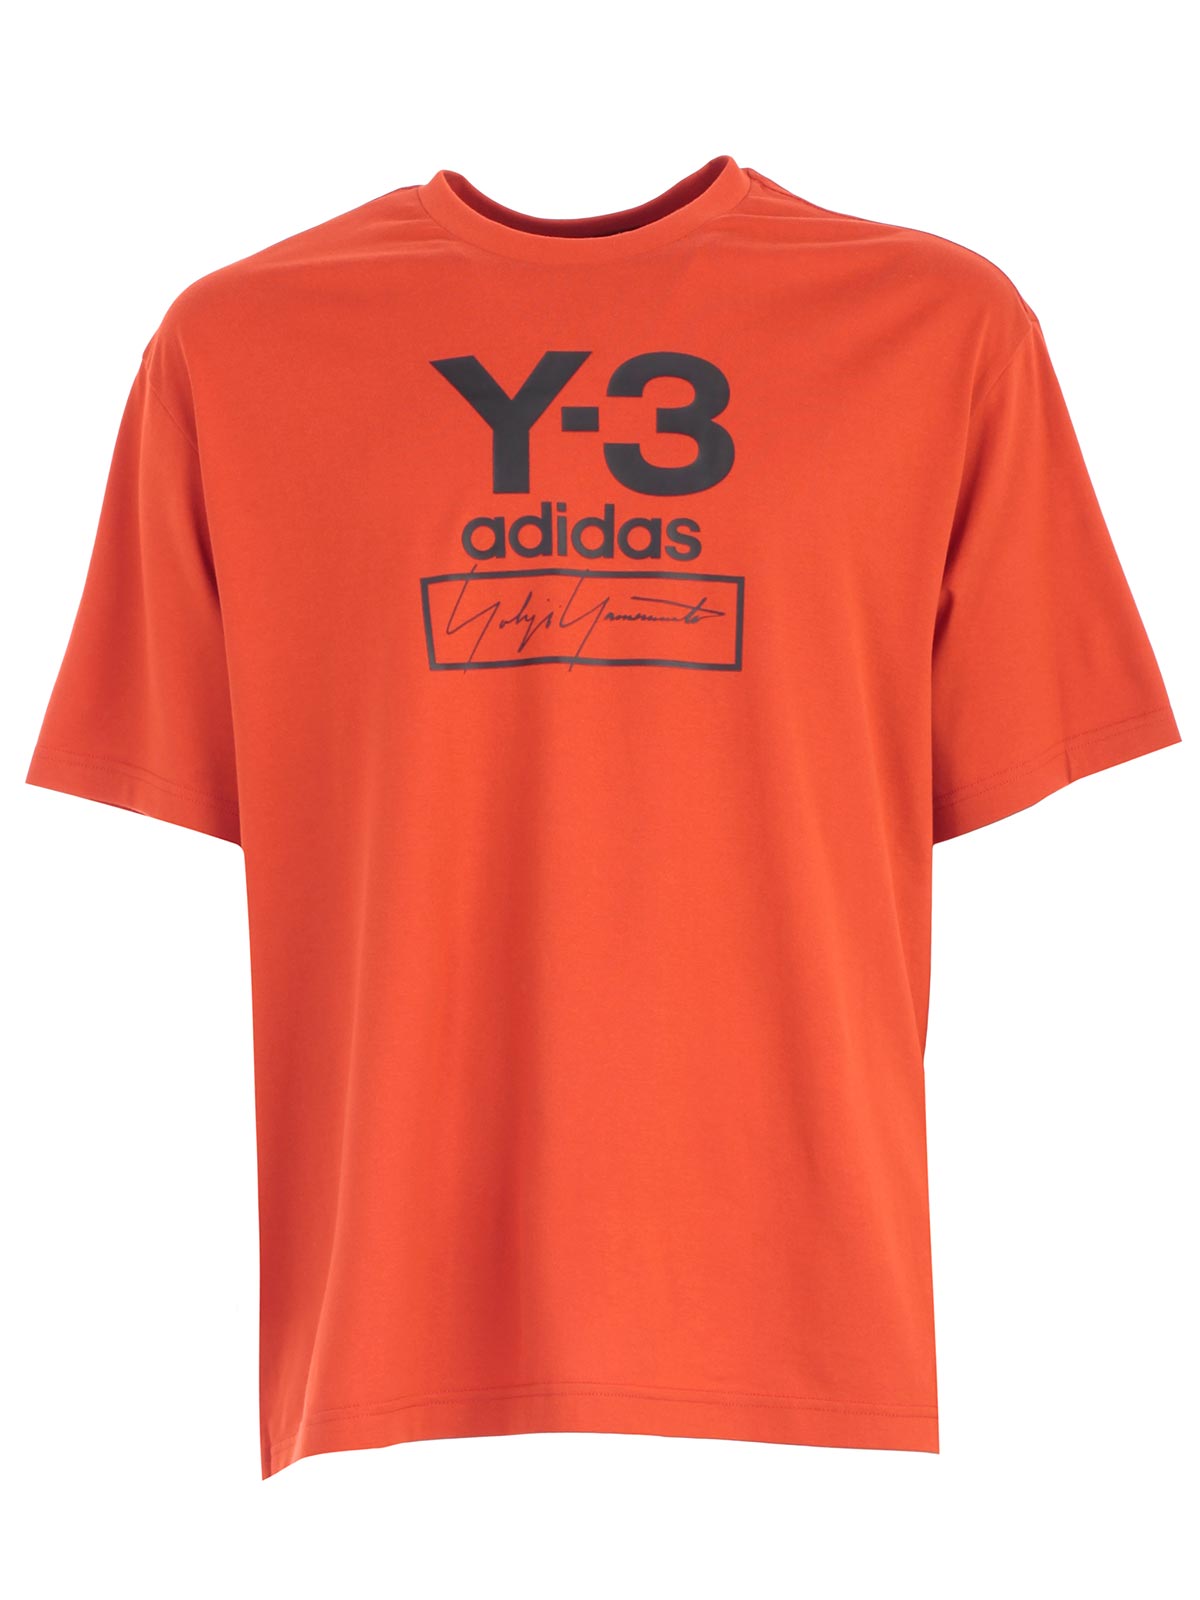 y-3 adidas t shirt